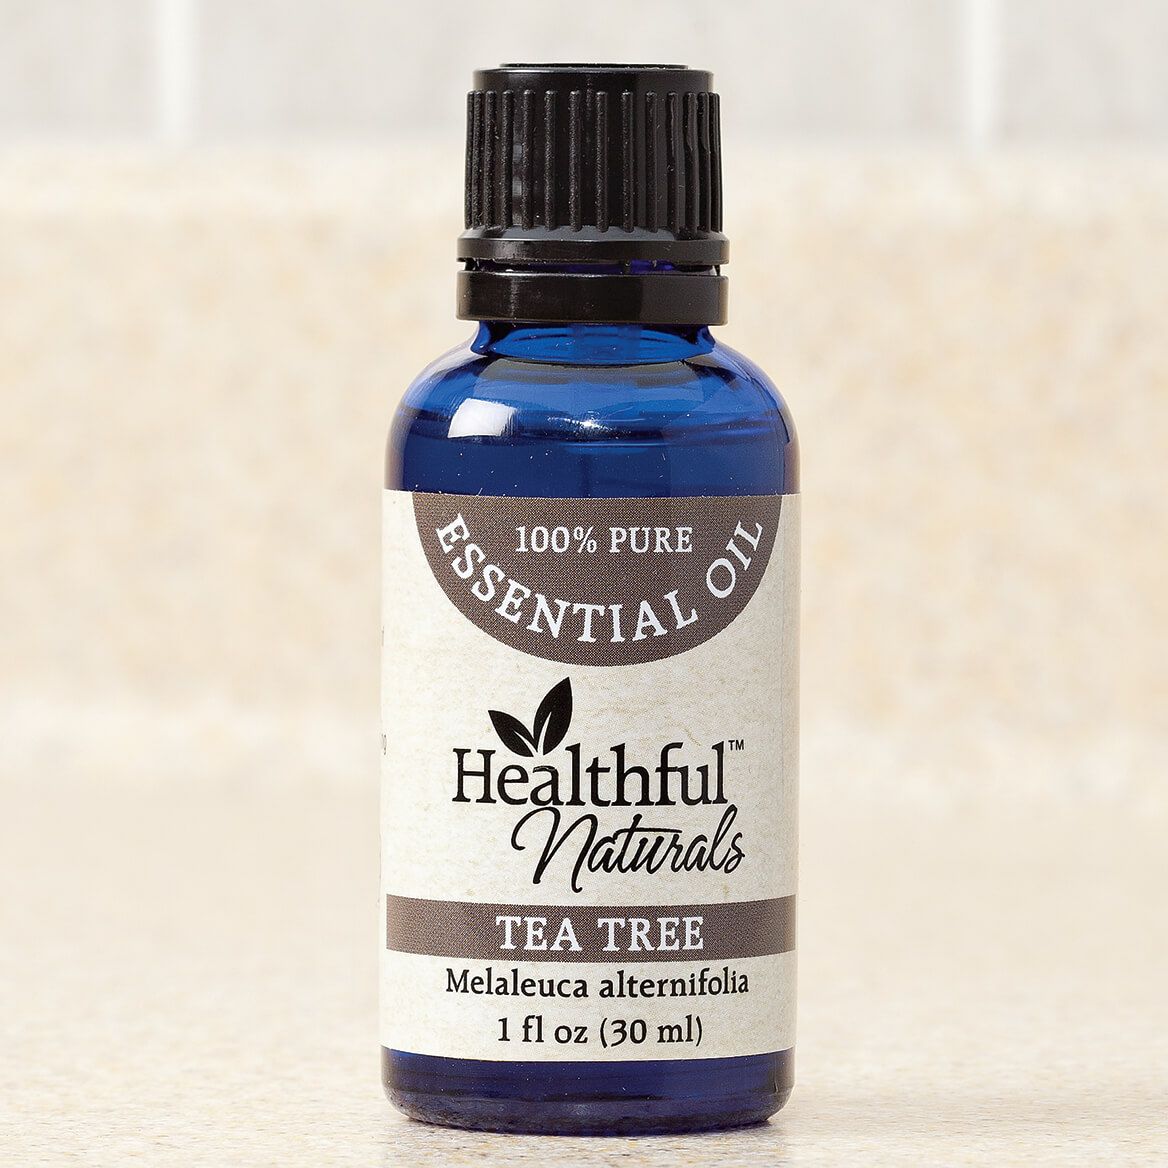 Healthful™ Naturals Tea Tree Essential Oil, 30 ml + '-' + 353457